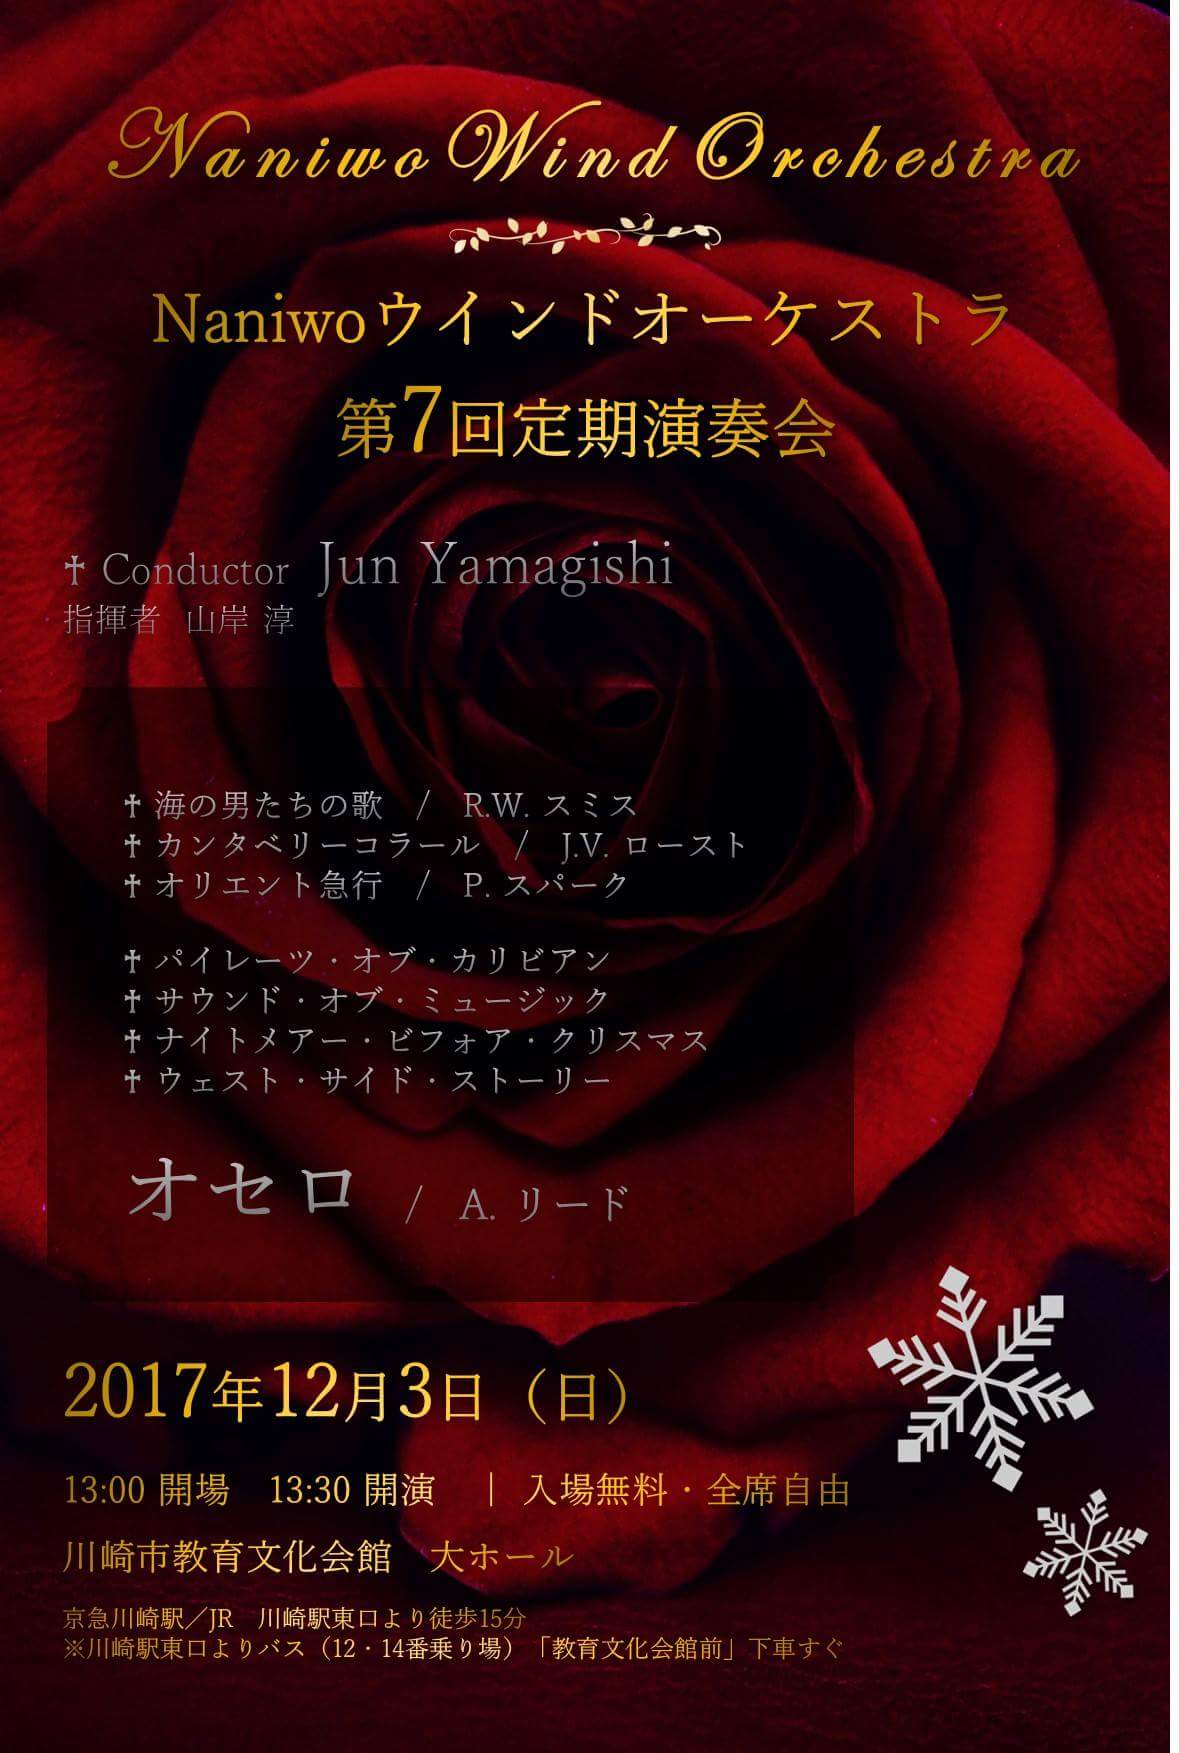 Naniwoウインドオーケストラ 第7回定期演奏会